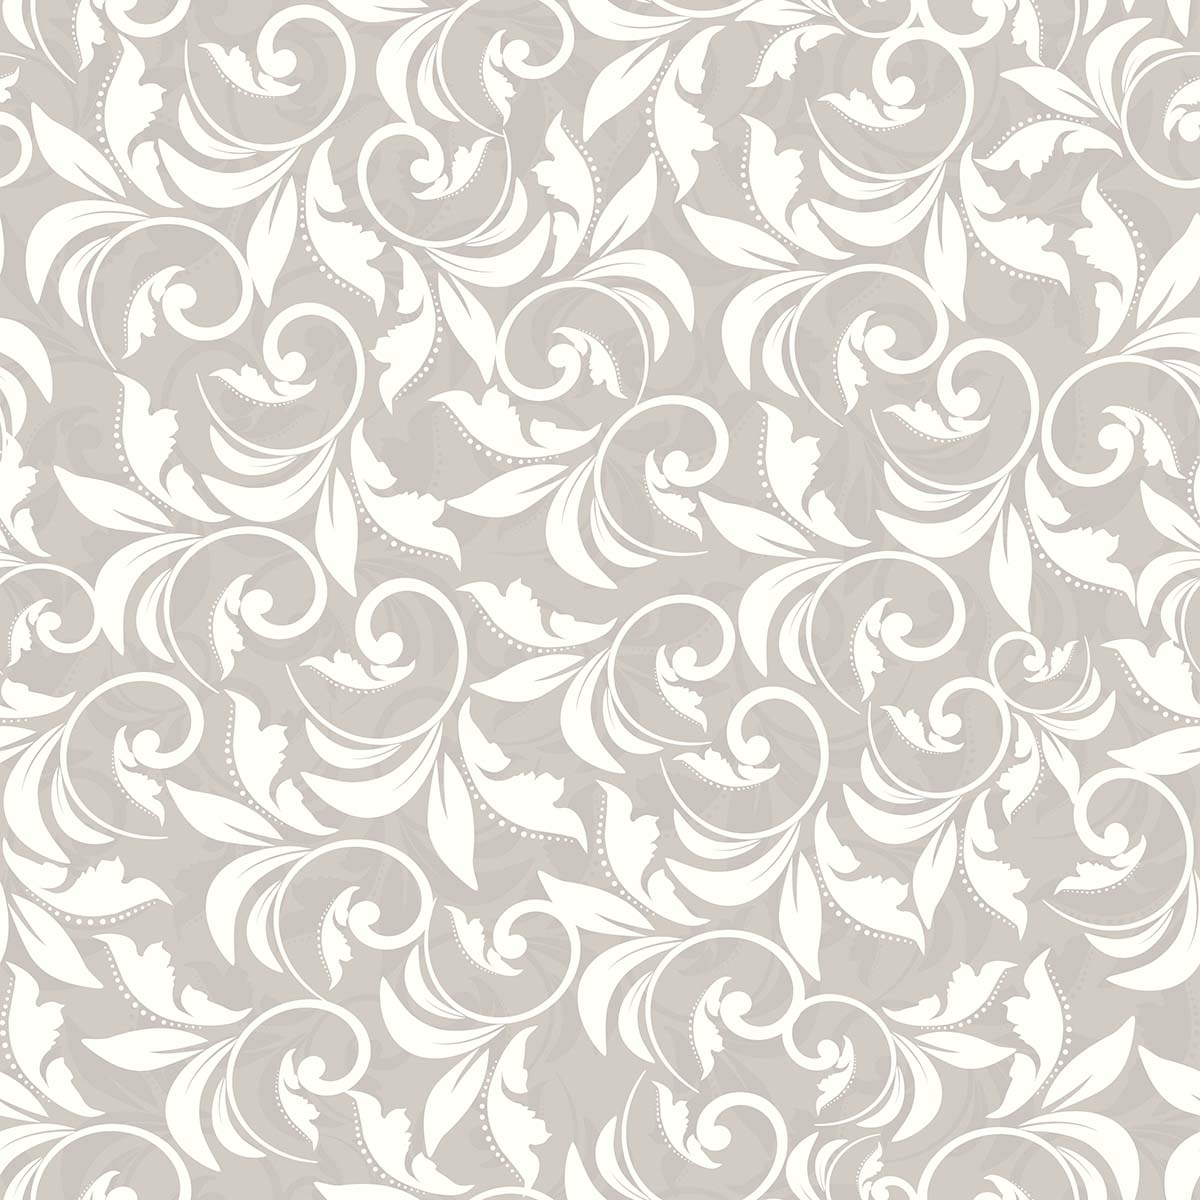 A pattern of white and gray swirls